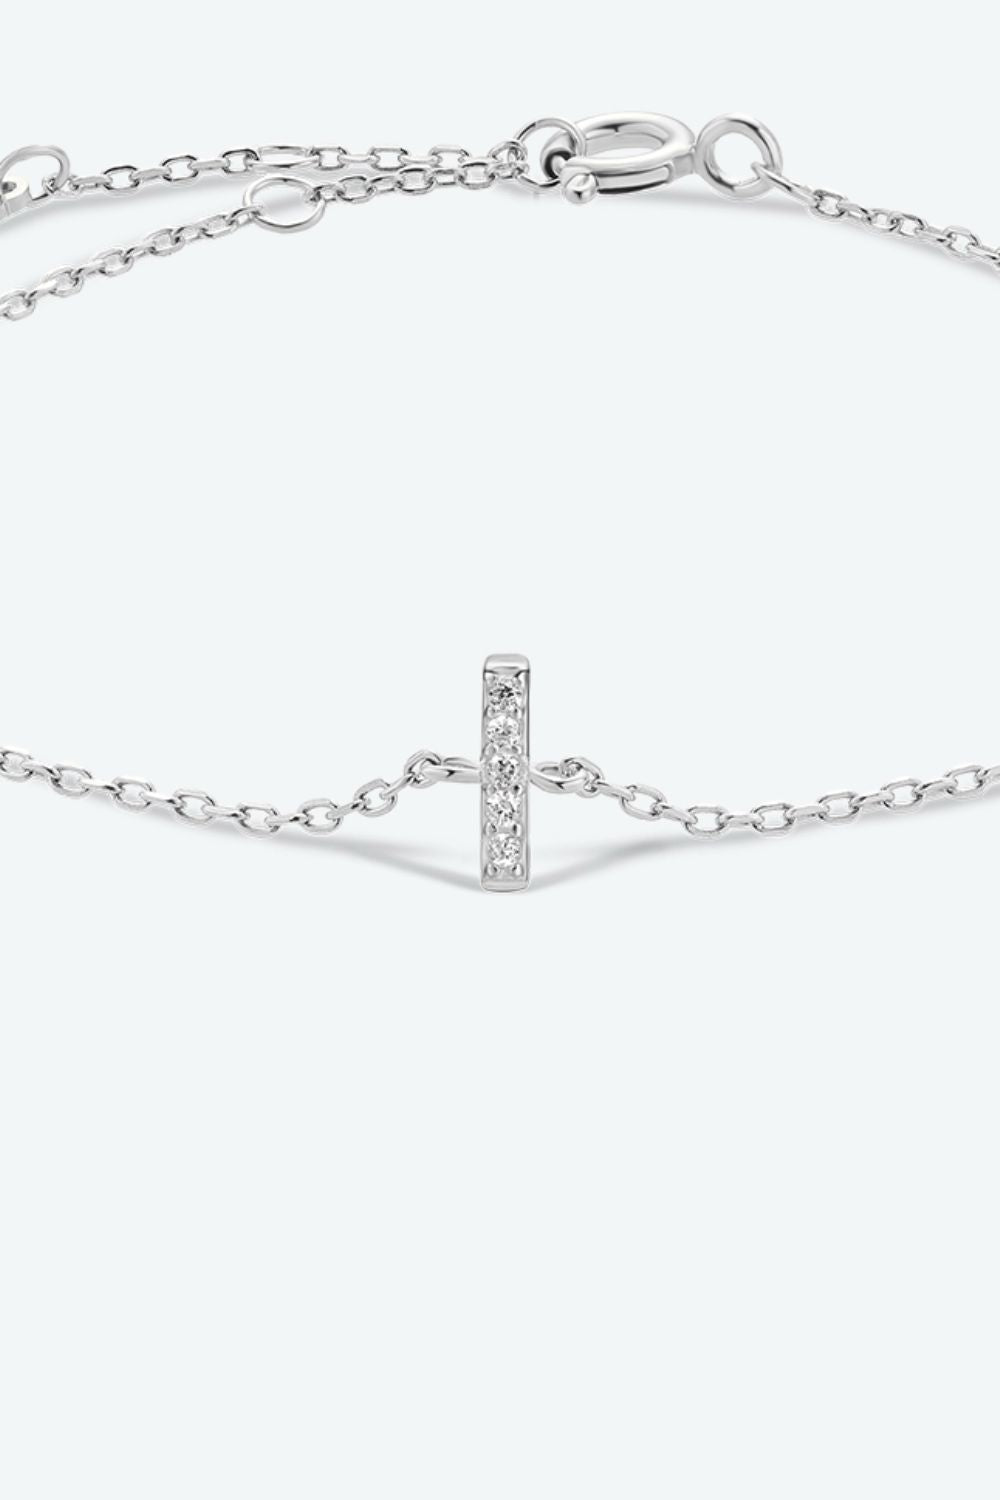 Zircon 925 Sterling Silver Bracelet - Women’s Jewelry - Bracelets - 18 - 2024